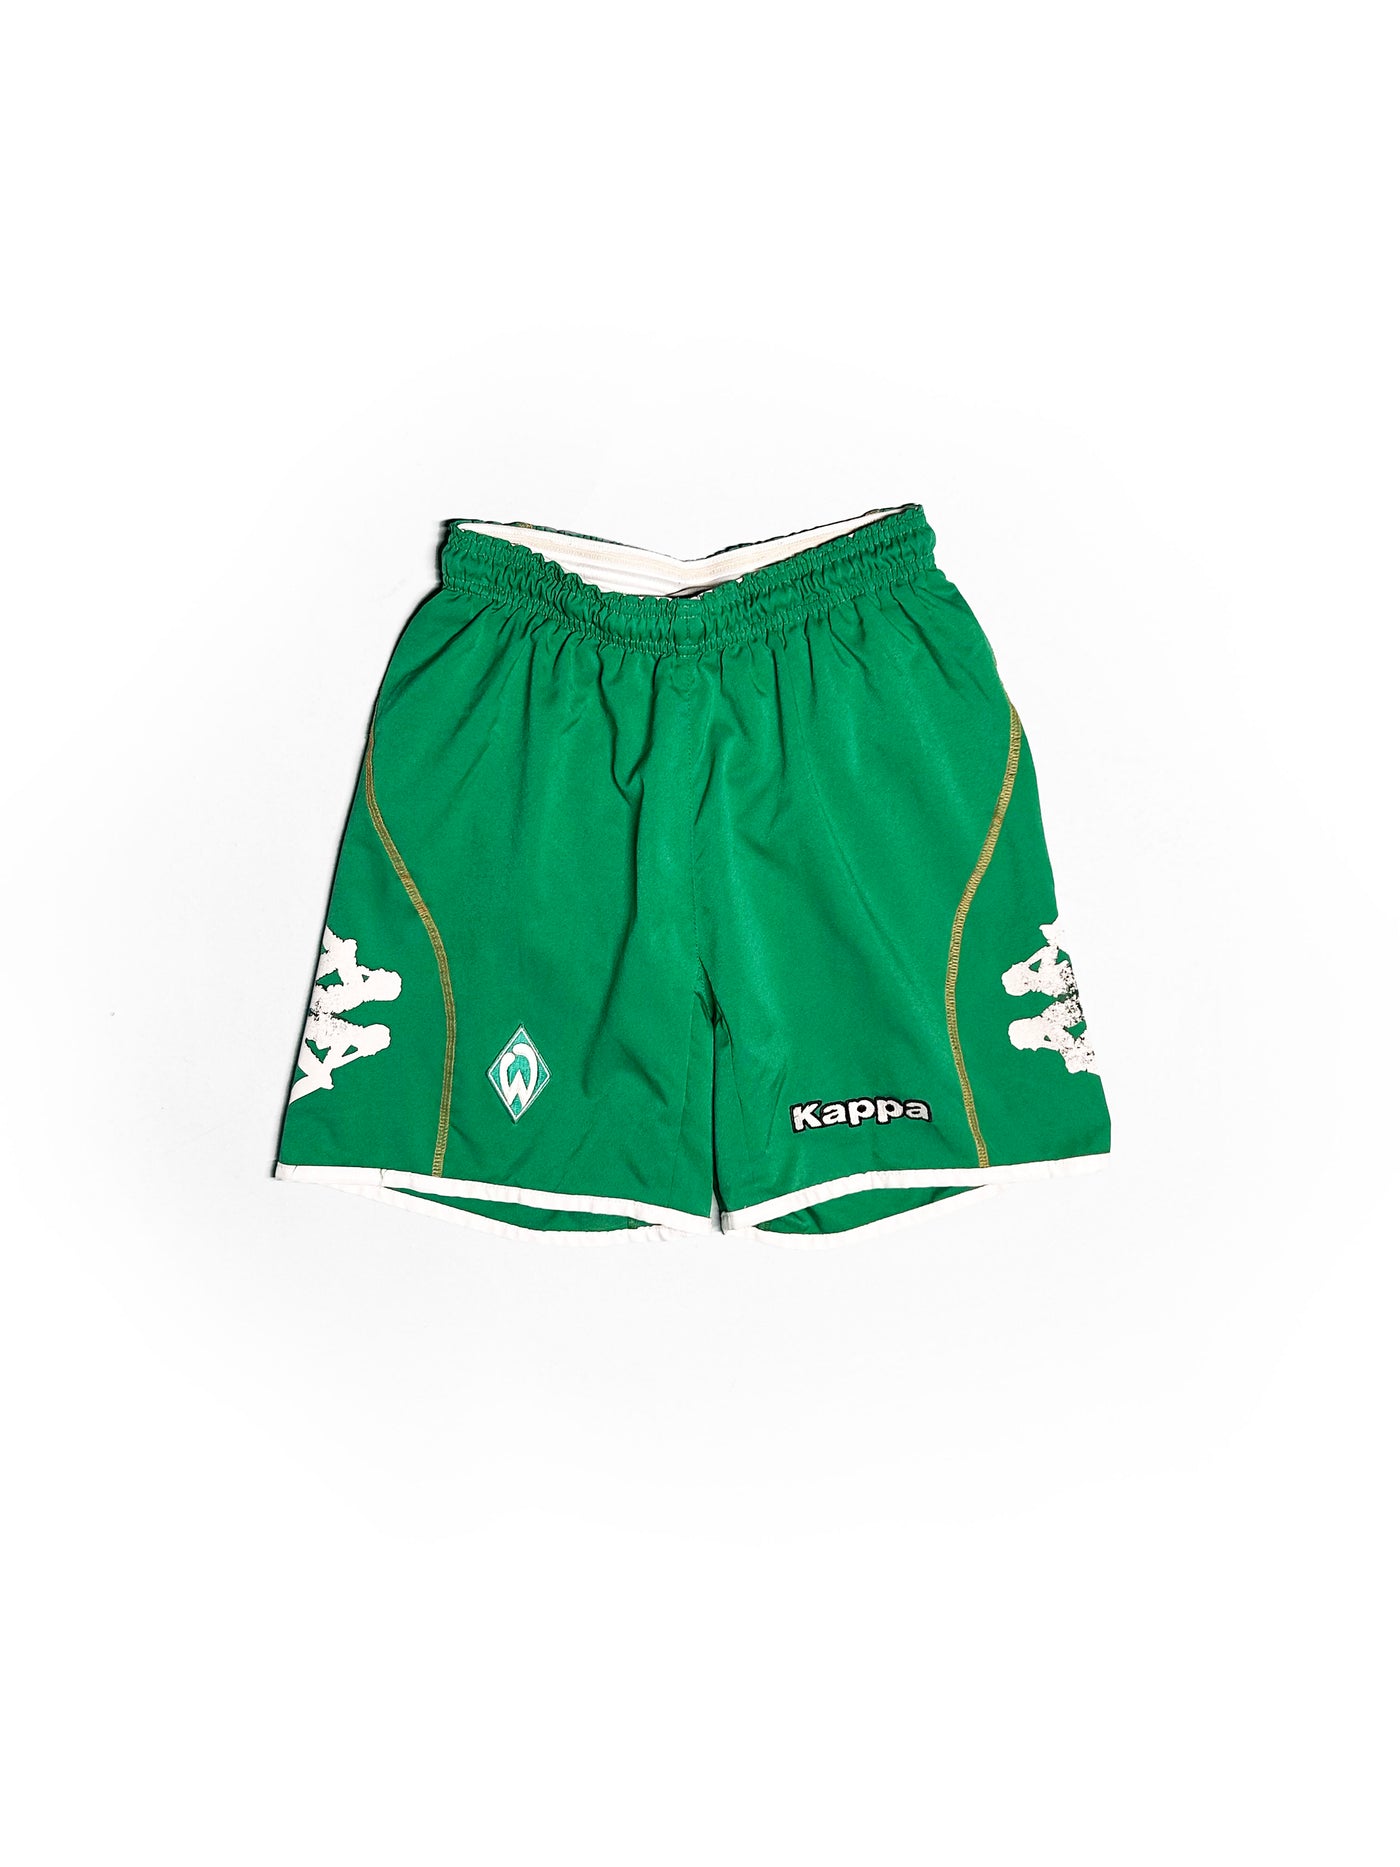 Vintage 1999 Werder Bremen Kappa Shorts